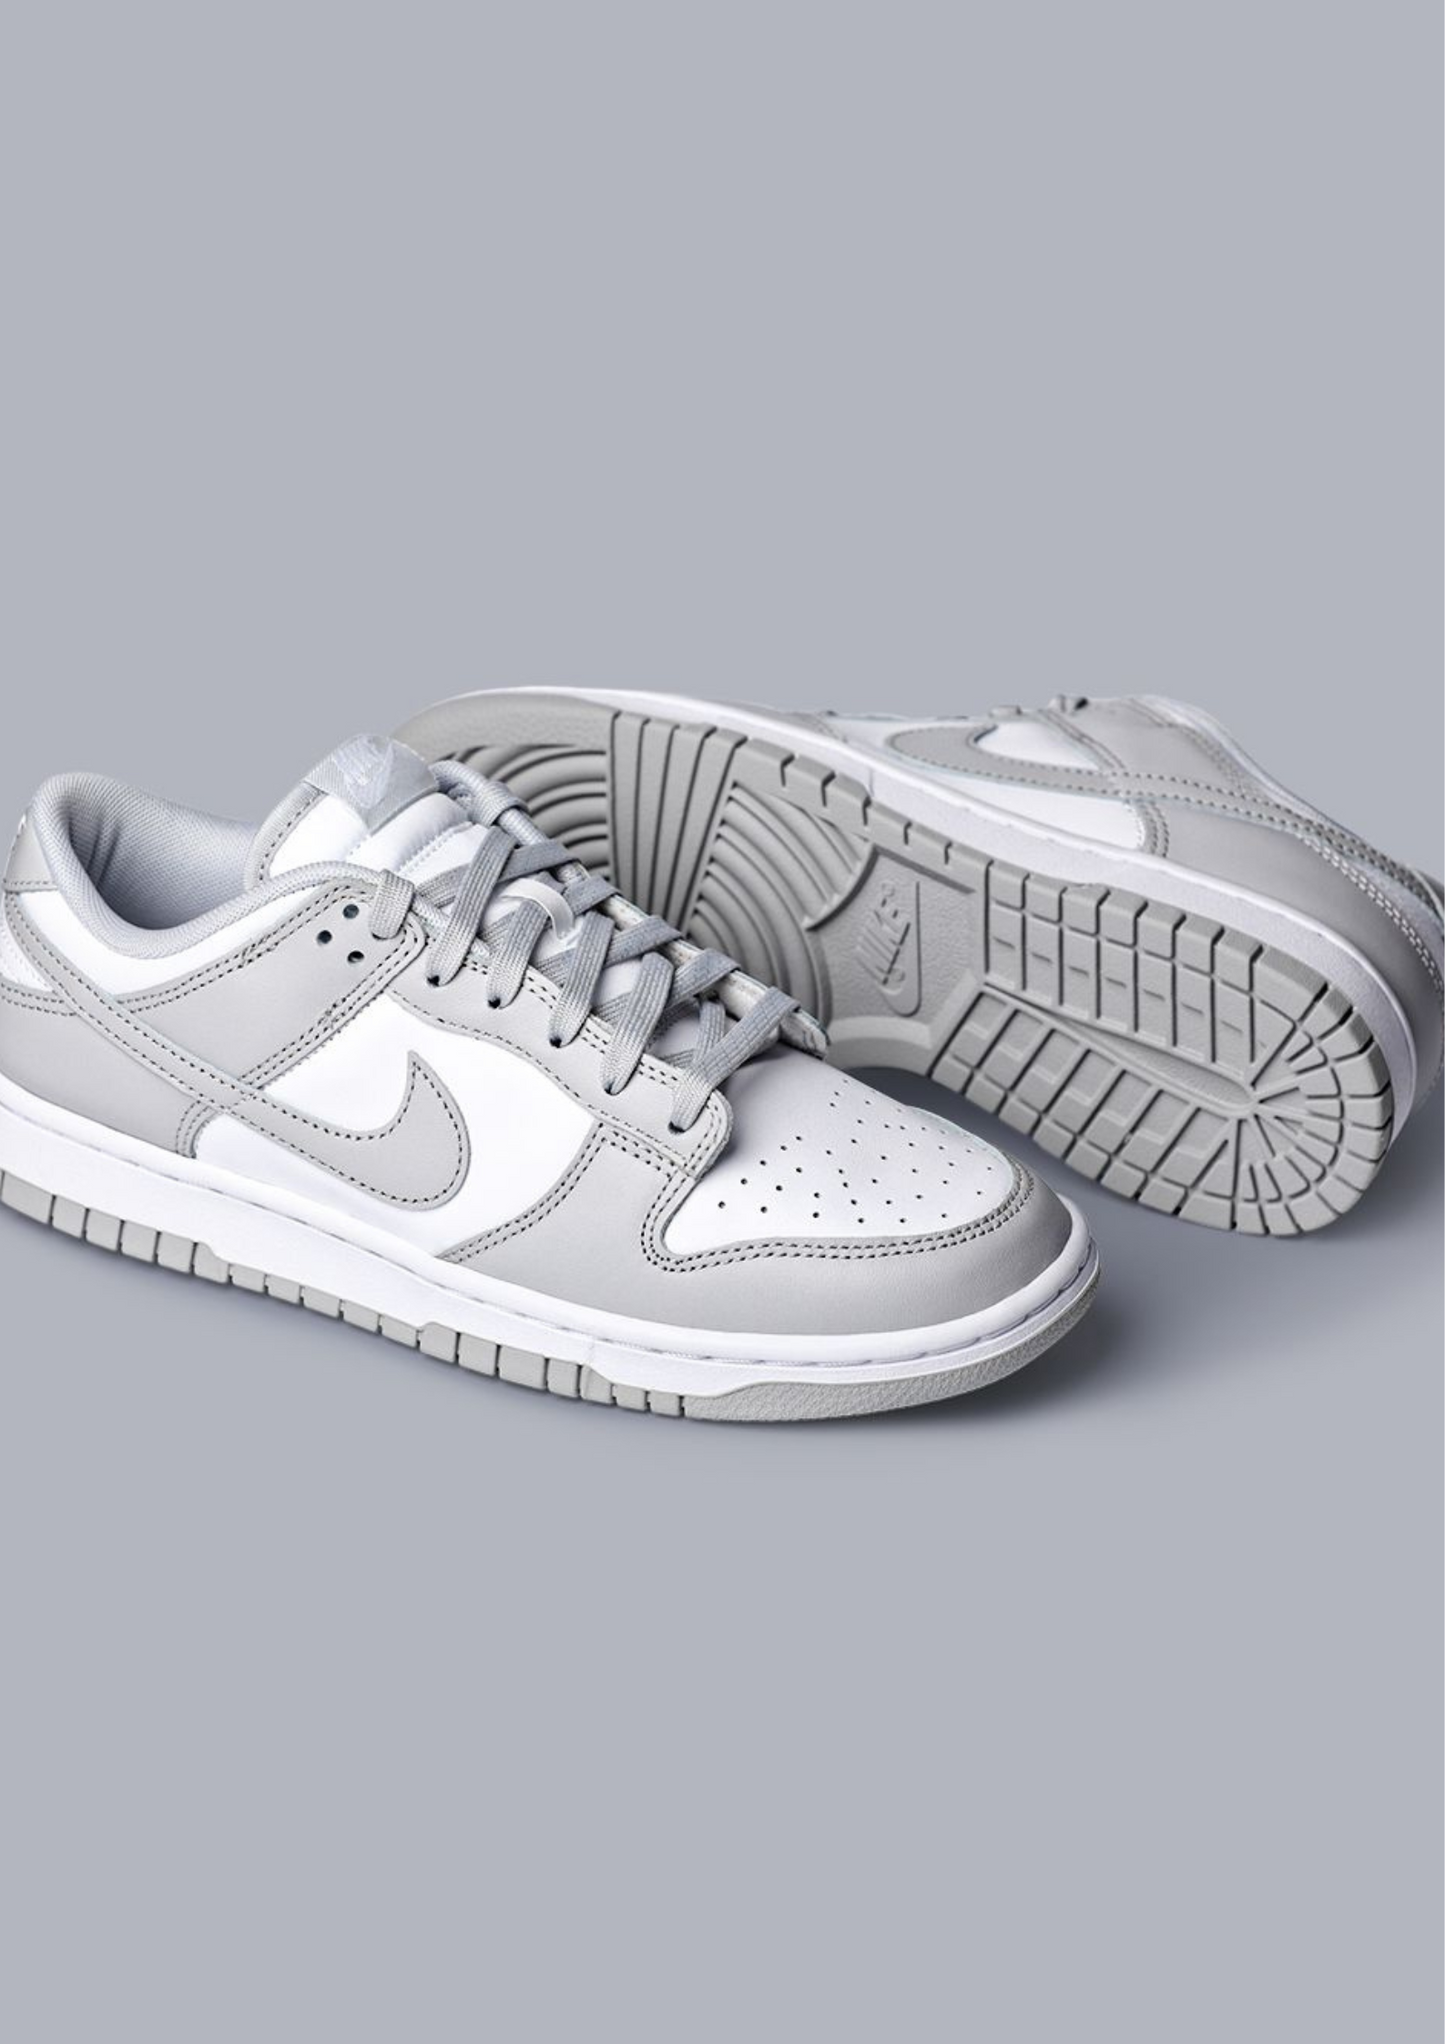 Nike Dunk Low "Grey White"